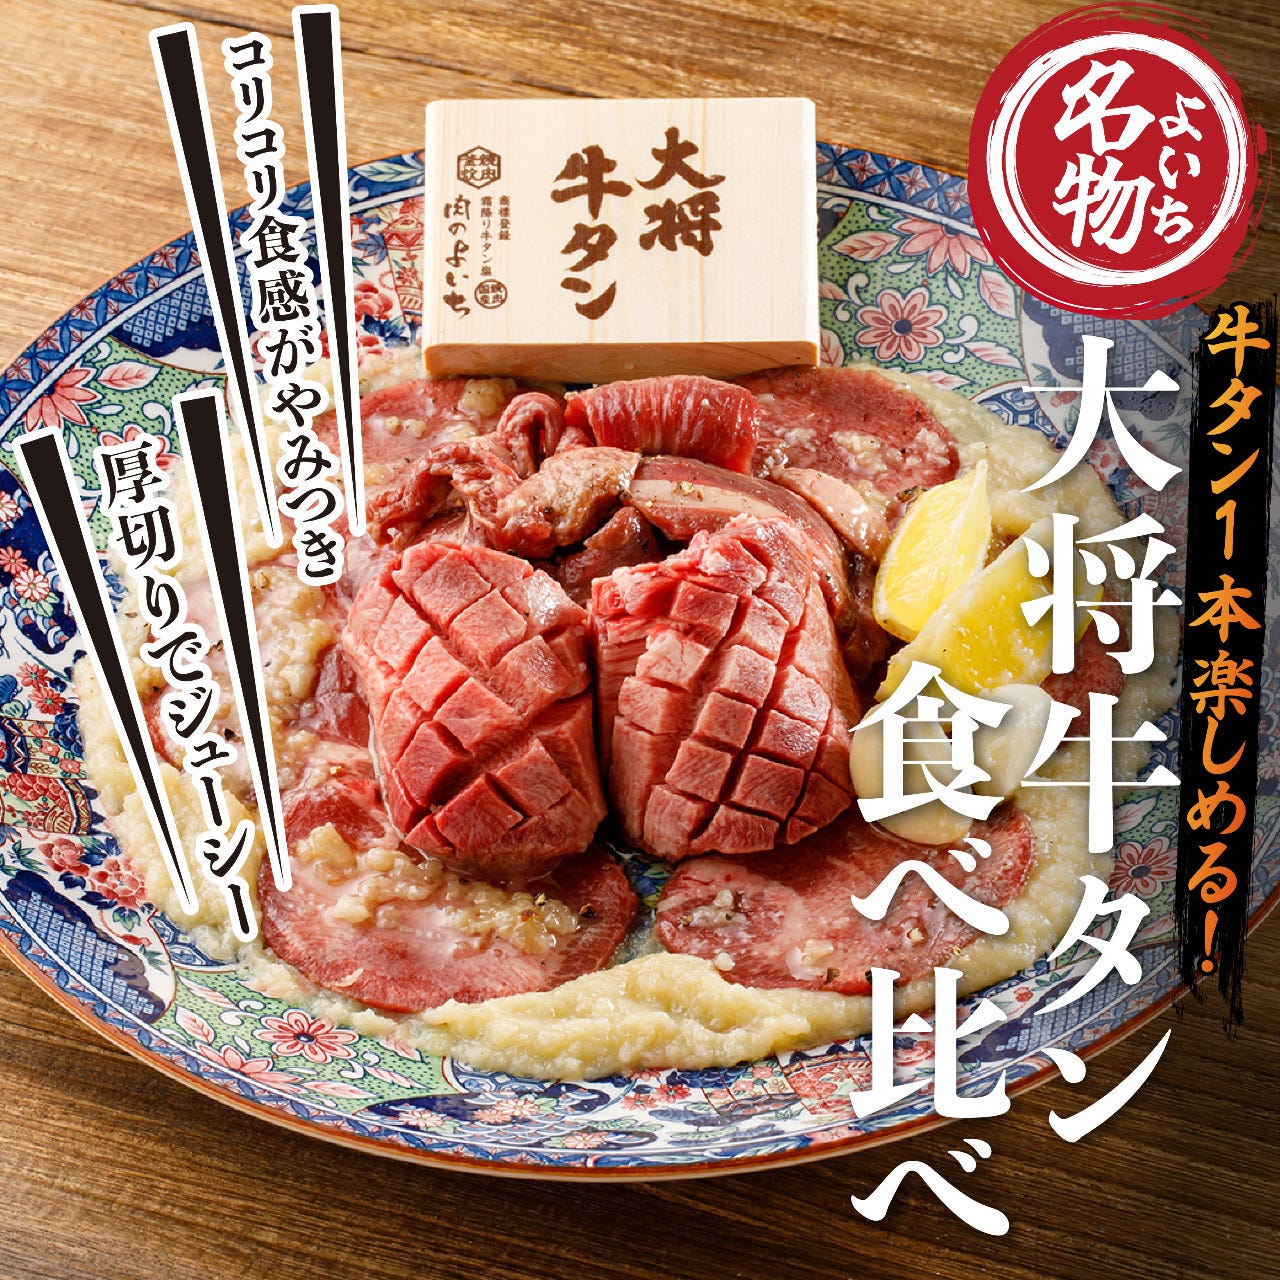 お米と焼肉 肉のよいち 太田川駅前店